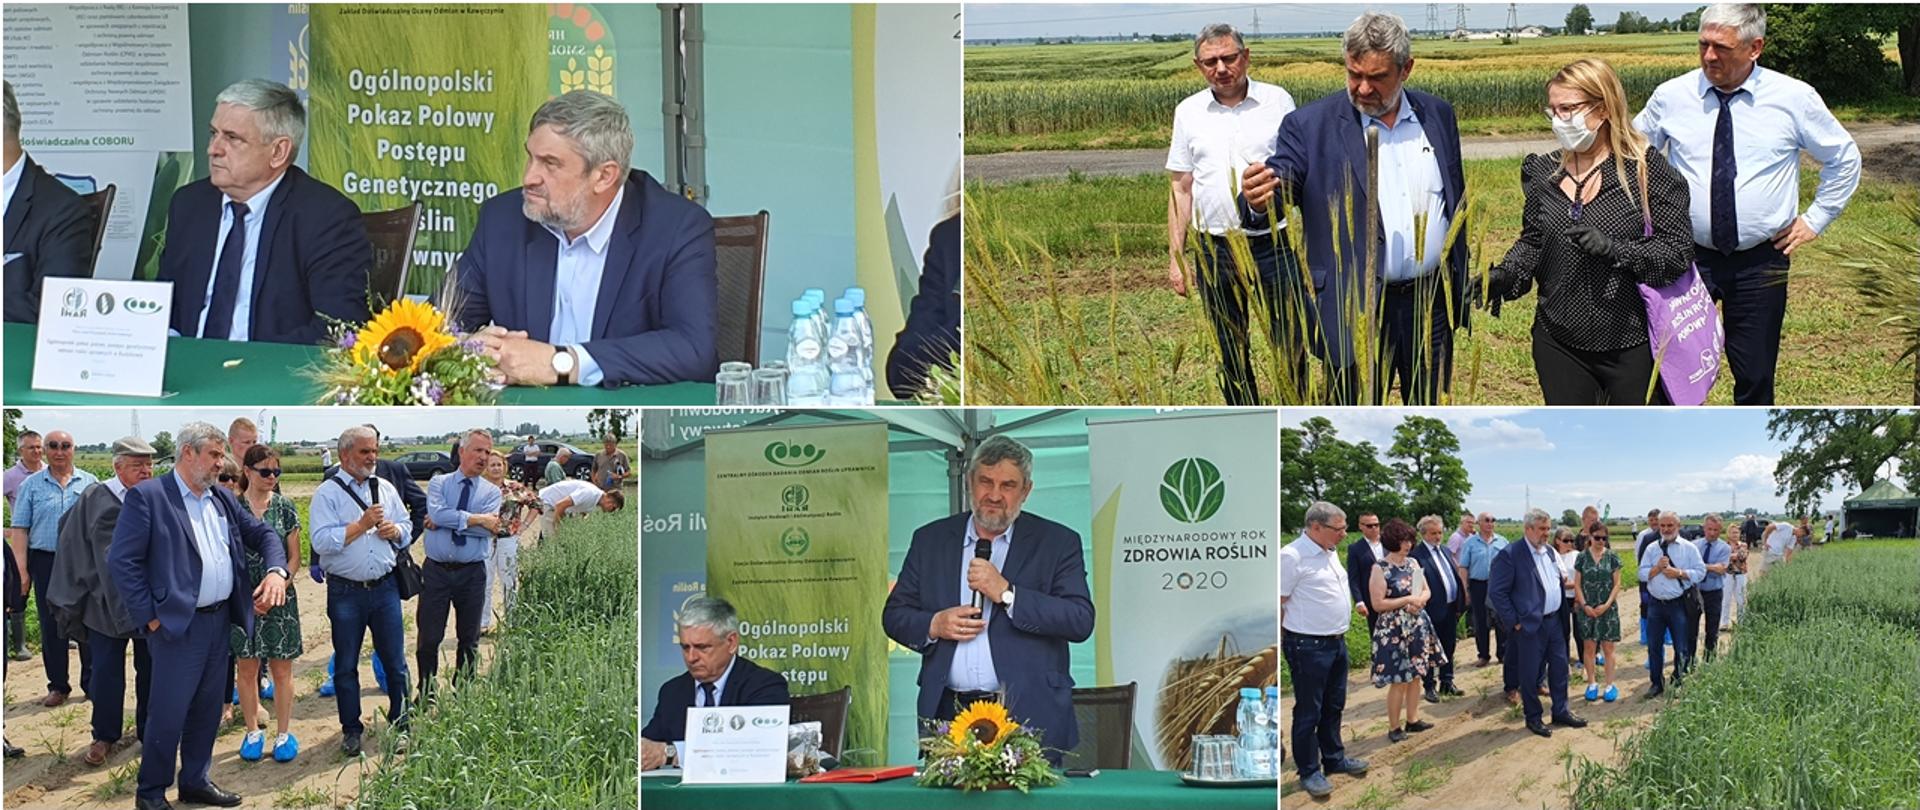 Ogólnopolski pokaz polowy postępu odmianowego roślin uprawnych W RADZIKOWIE